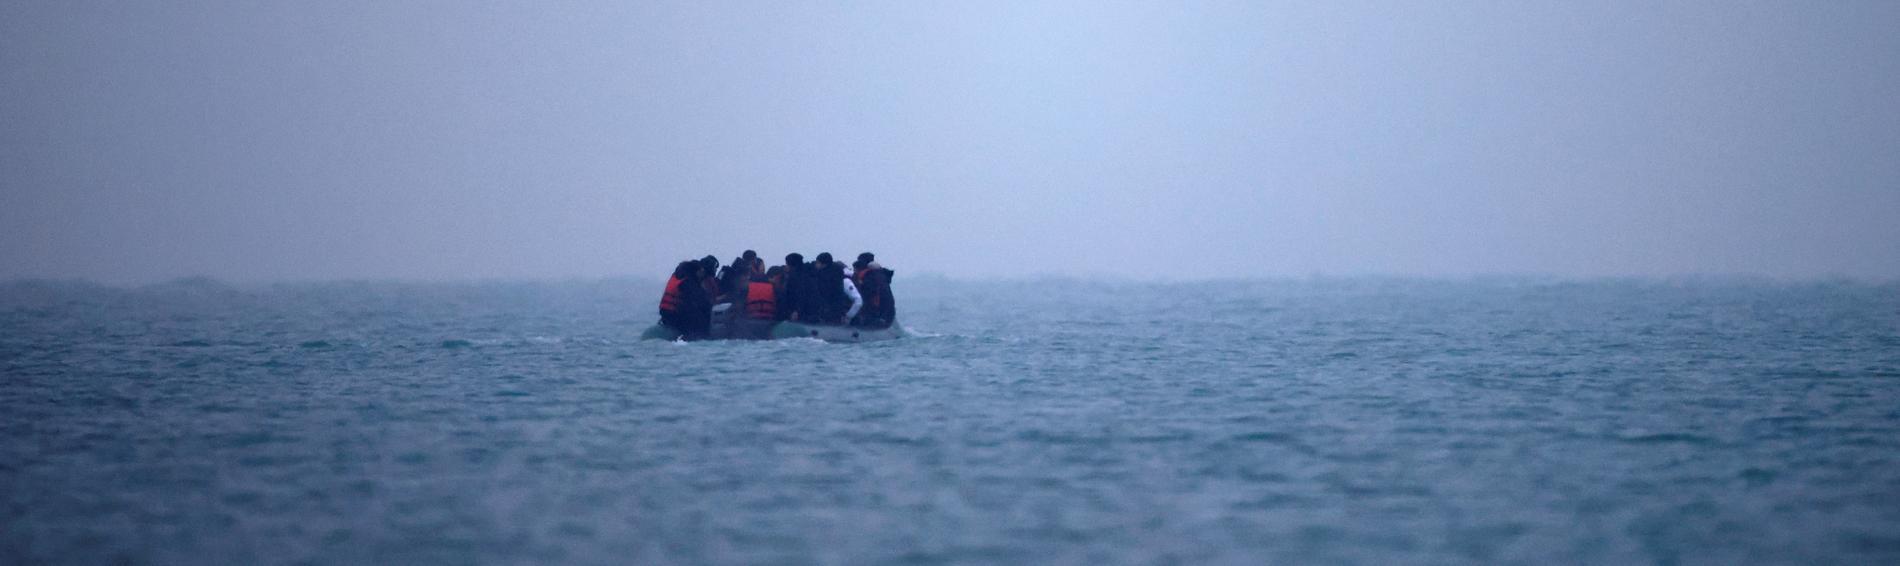 Ein Boot voller geflüchteter Menschen treibt im Meer. Eine Tragödie, für die die Politik verantwortlich ist. Foto: Ärzte der Welt